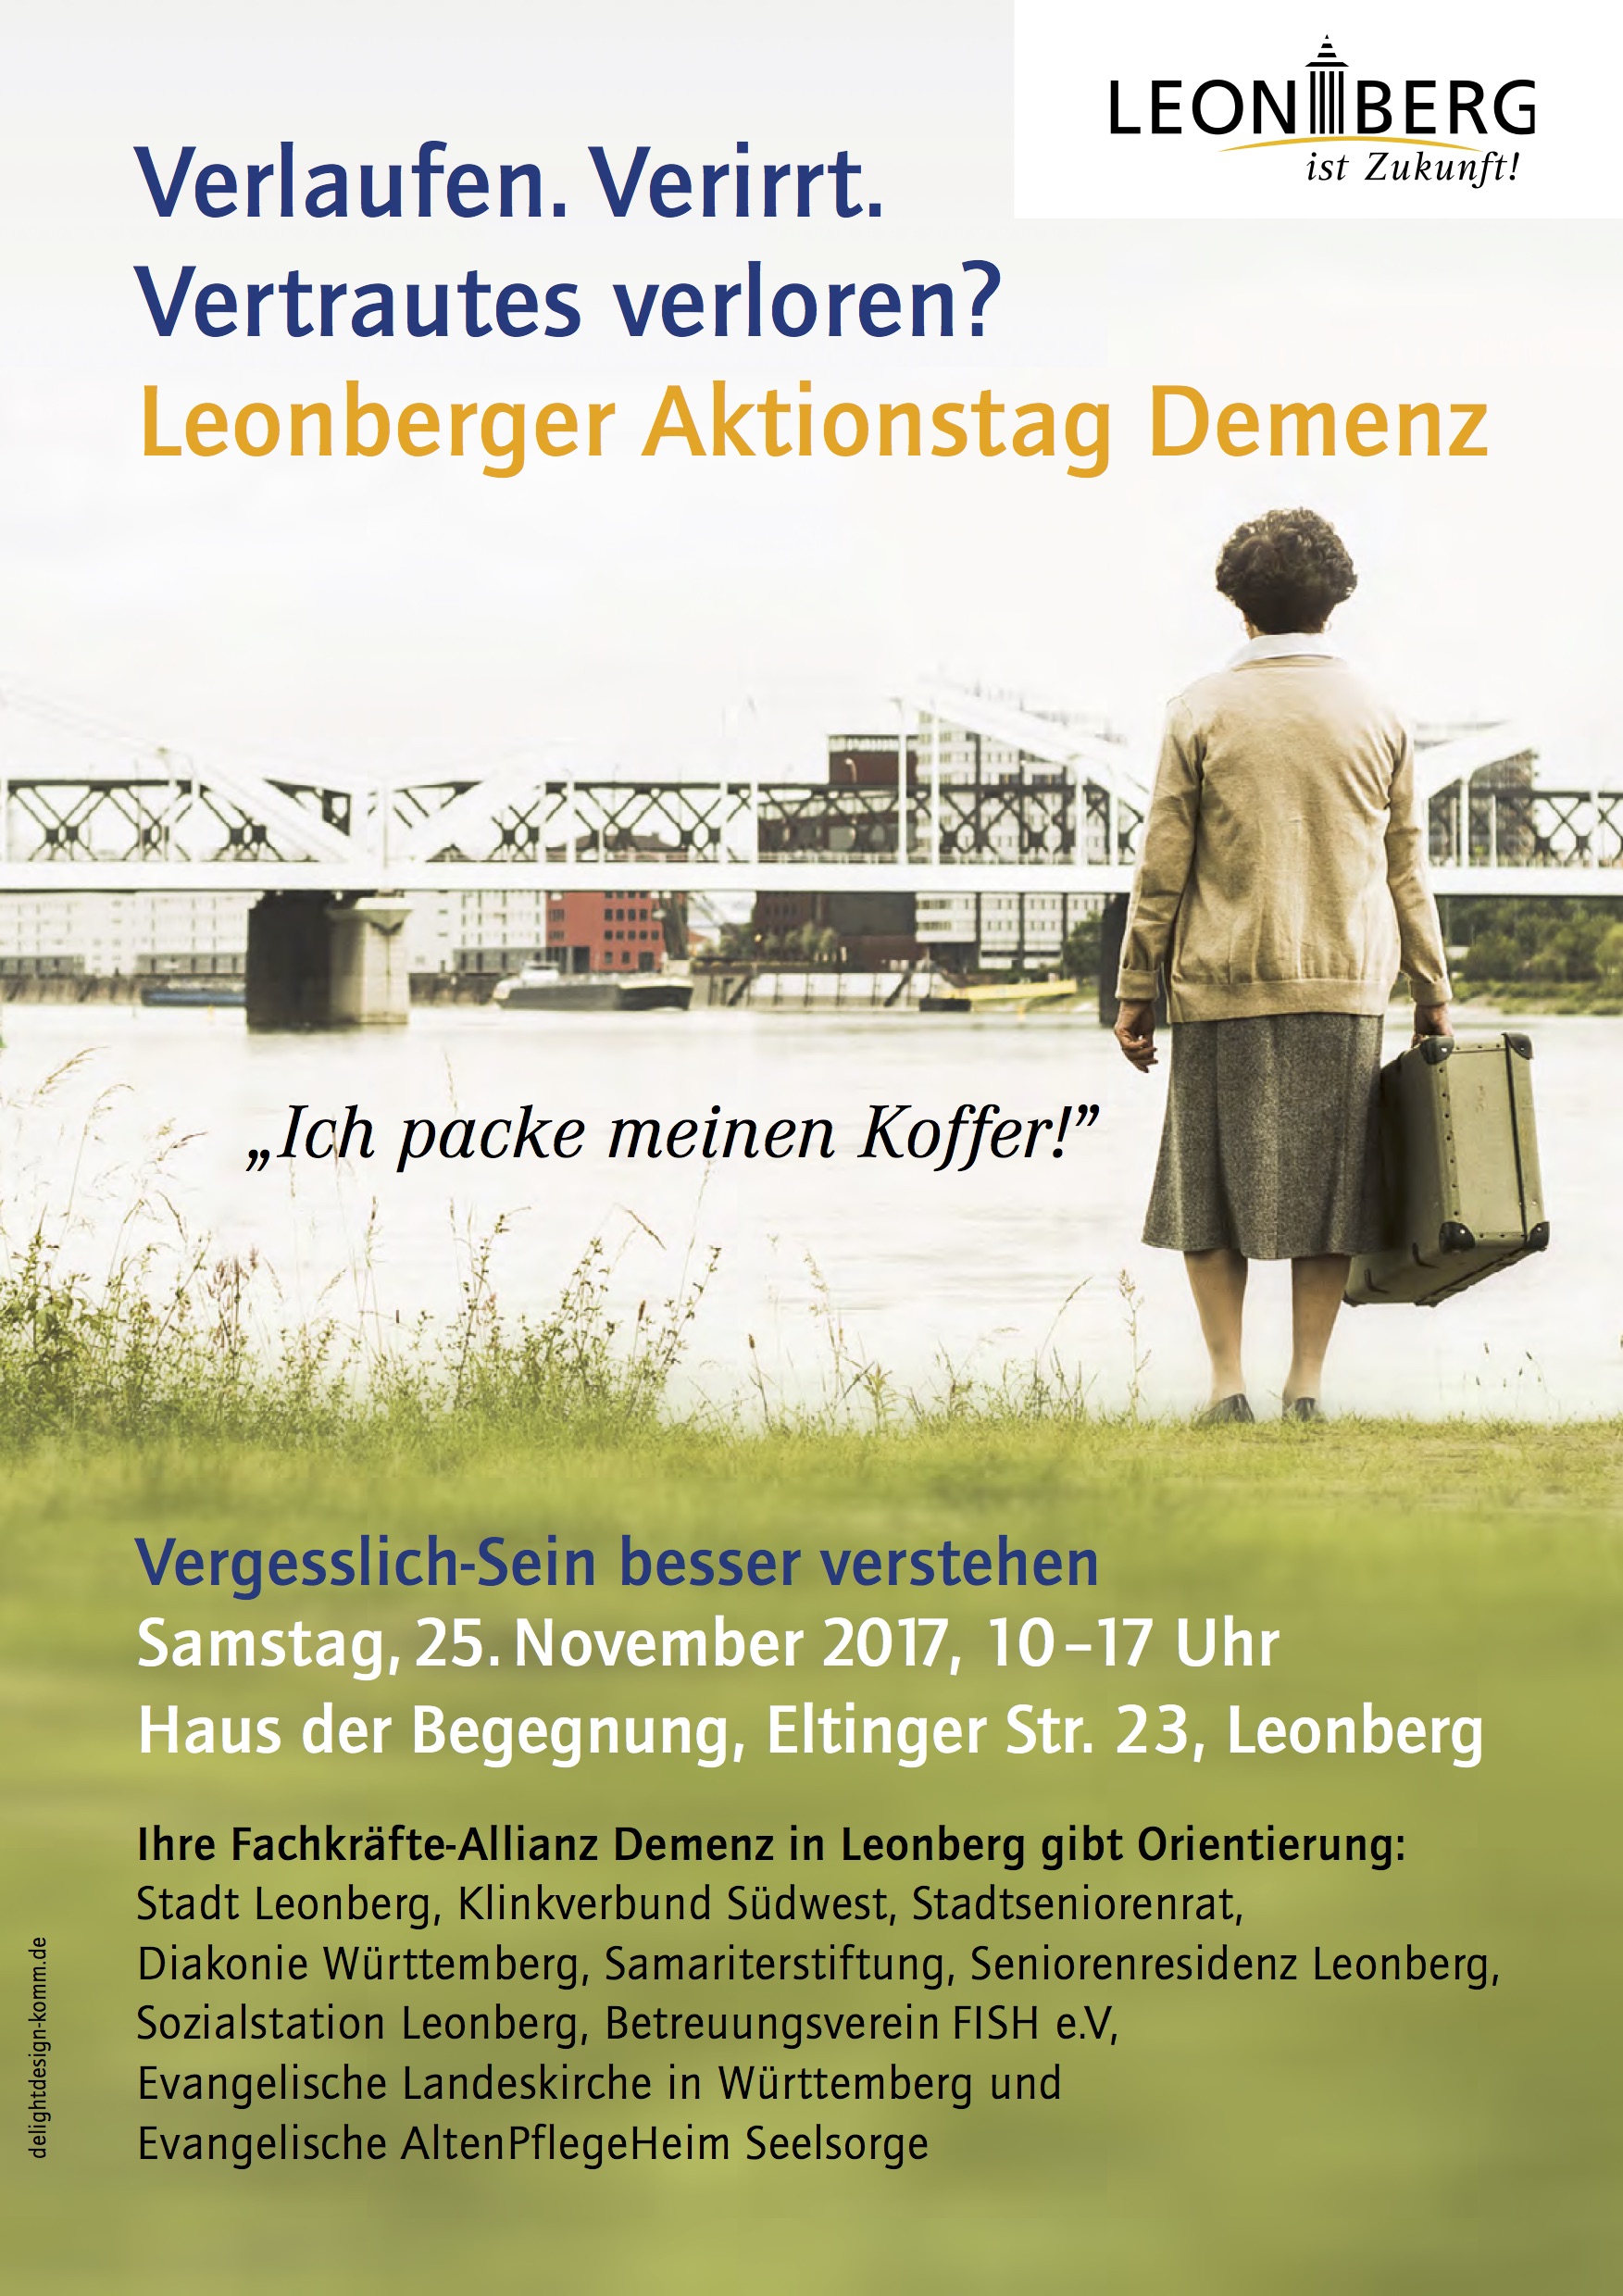 plakat A3 Leonberger Aktionstag demenzRZ2 2